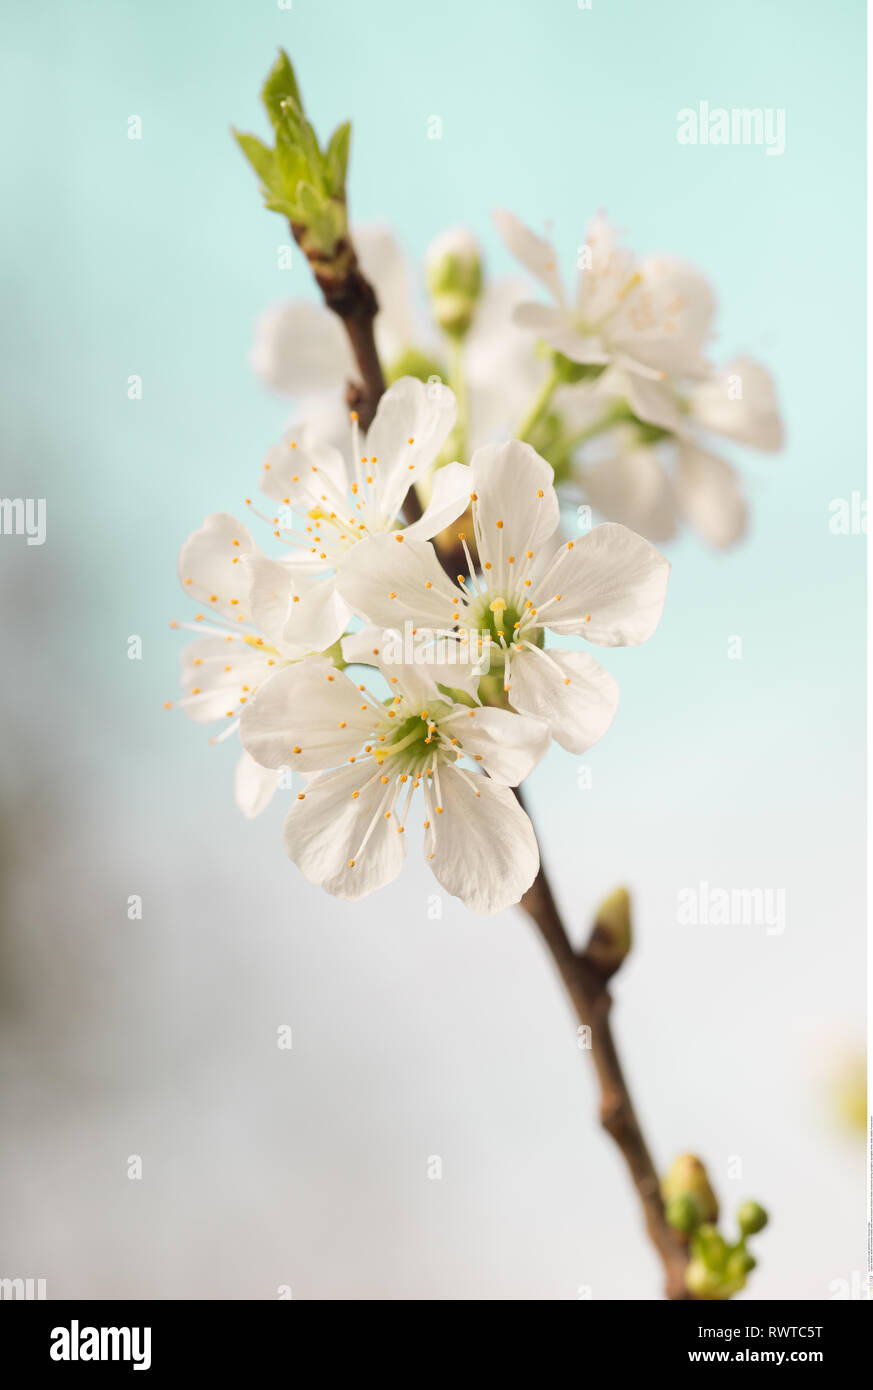 La botanica, bianco di fiori di ciliegio, attenzione! Per Greetingcard-Use / Postcard-Use nei Paesi di lingua tedesca talune restrizioni possono applicare Foto Stock